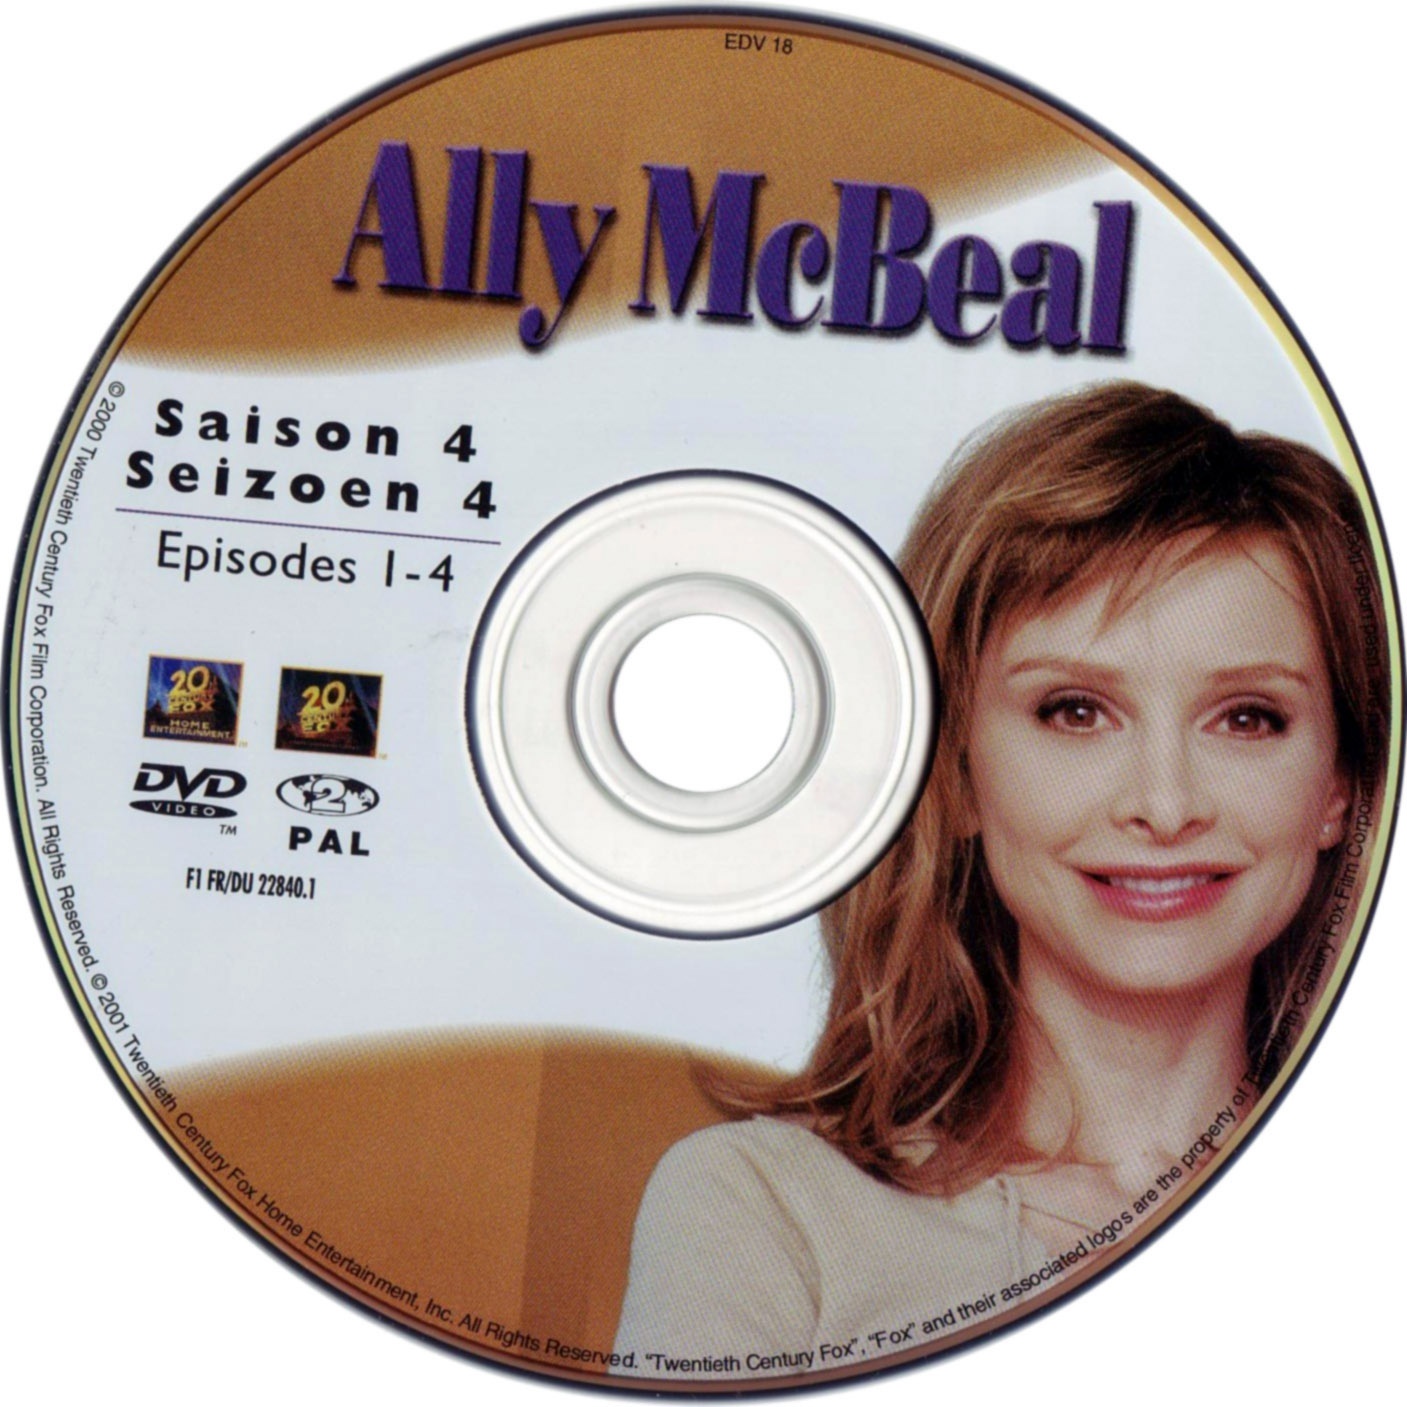 Ally McBeal Saison 4 DVD 1